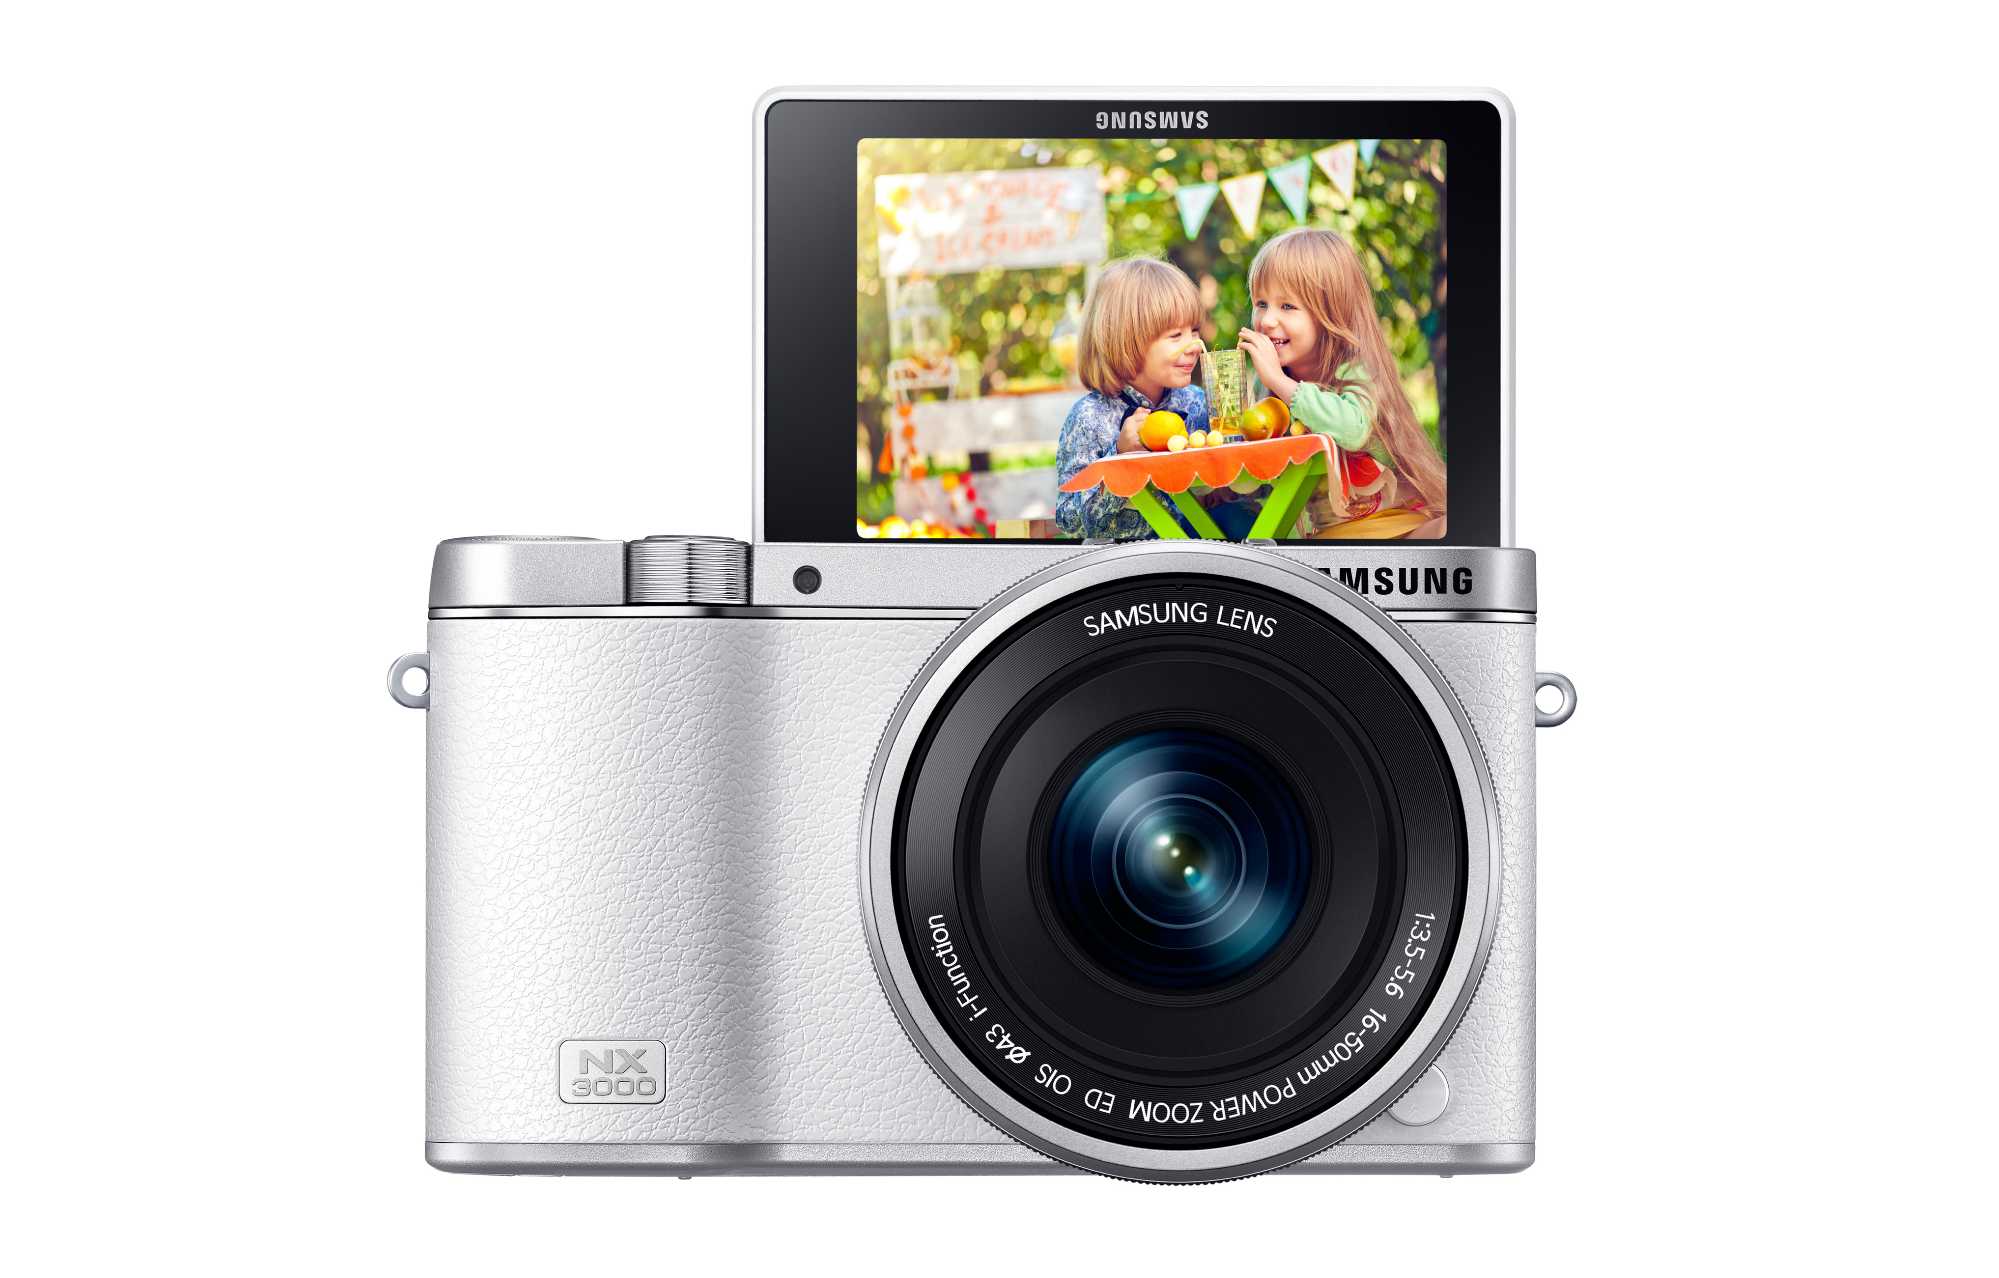 Samsung SMART Camera NX3000 Blends Retro Design